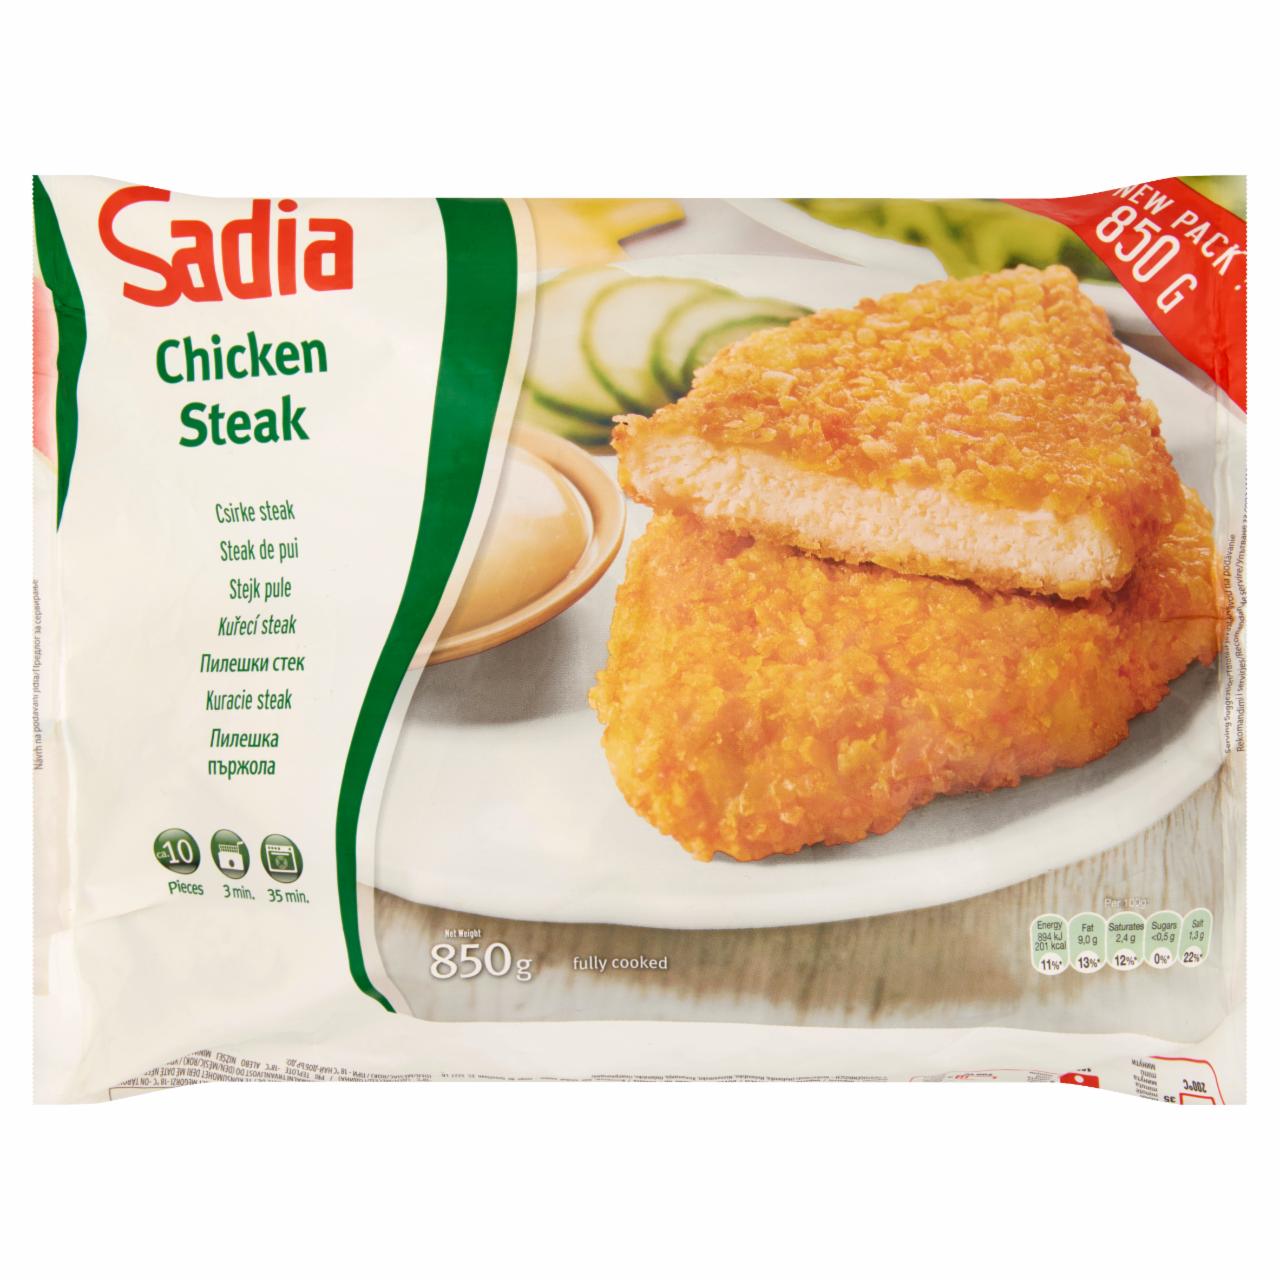 Képek - Sadia gyorsfagyasztott, főtt, formázott csirke steak 850 g